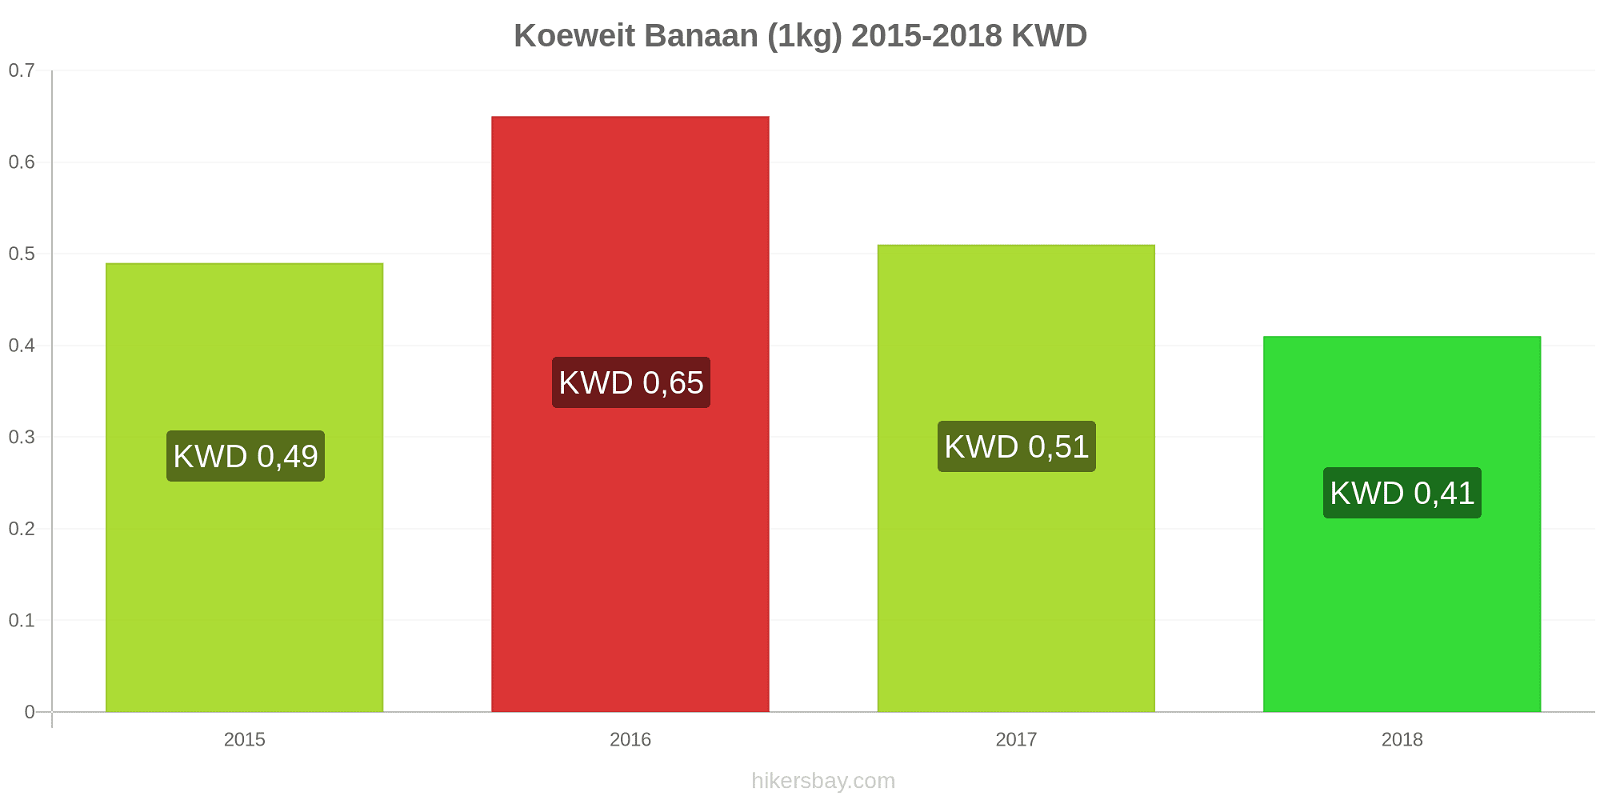 Koeweit prijswijzigingen Bananen (1kg) hikersbay.com